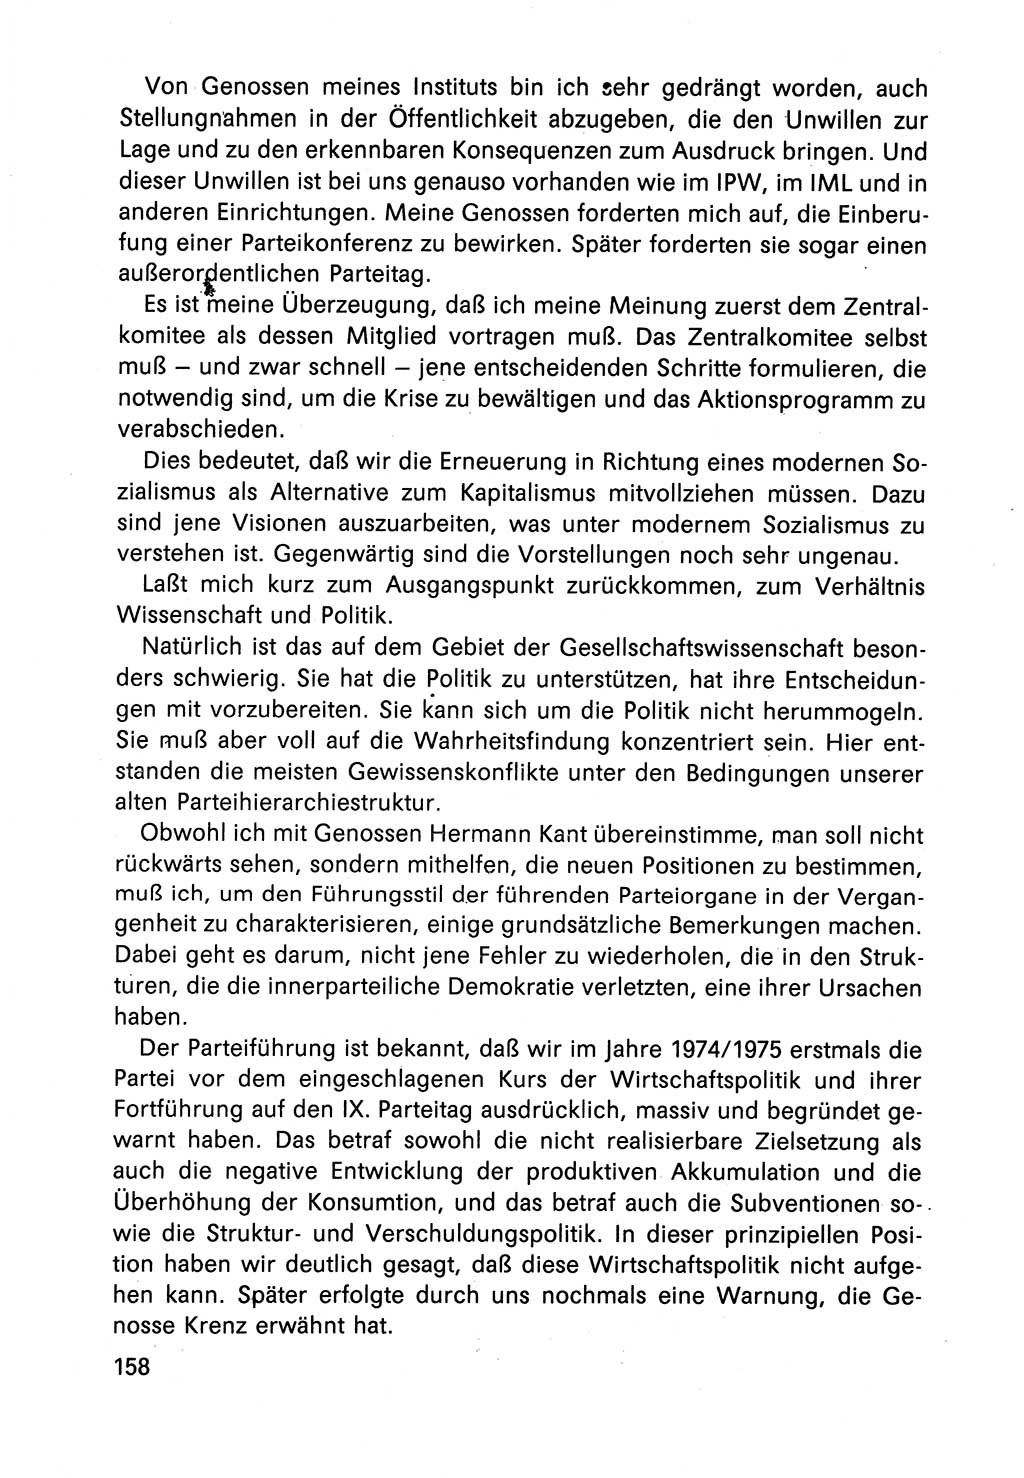 Diskussionsbeiträge, 10. Tagung des ZK (Zentralkomitee) der SED (Sozialistische Einheitspartei Deutschlands) [Deutsche Demokratische Republik (DDR)] 1989, Seite 158 (Disk.-Beitr. 10. Tg. ZK SED DDR 1989, S. 158)